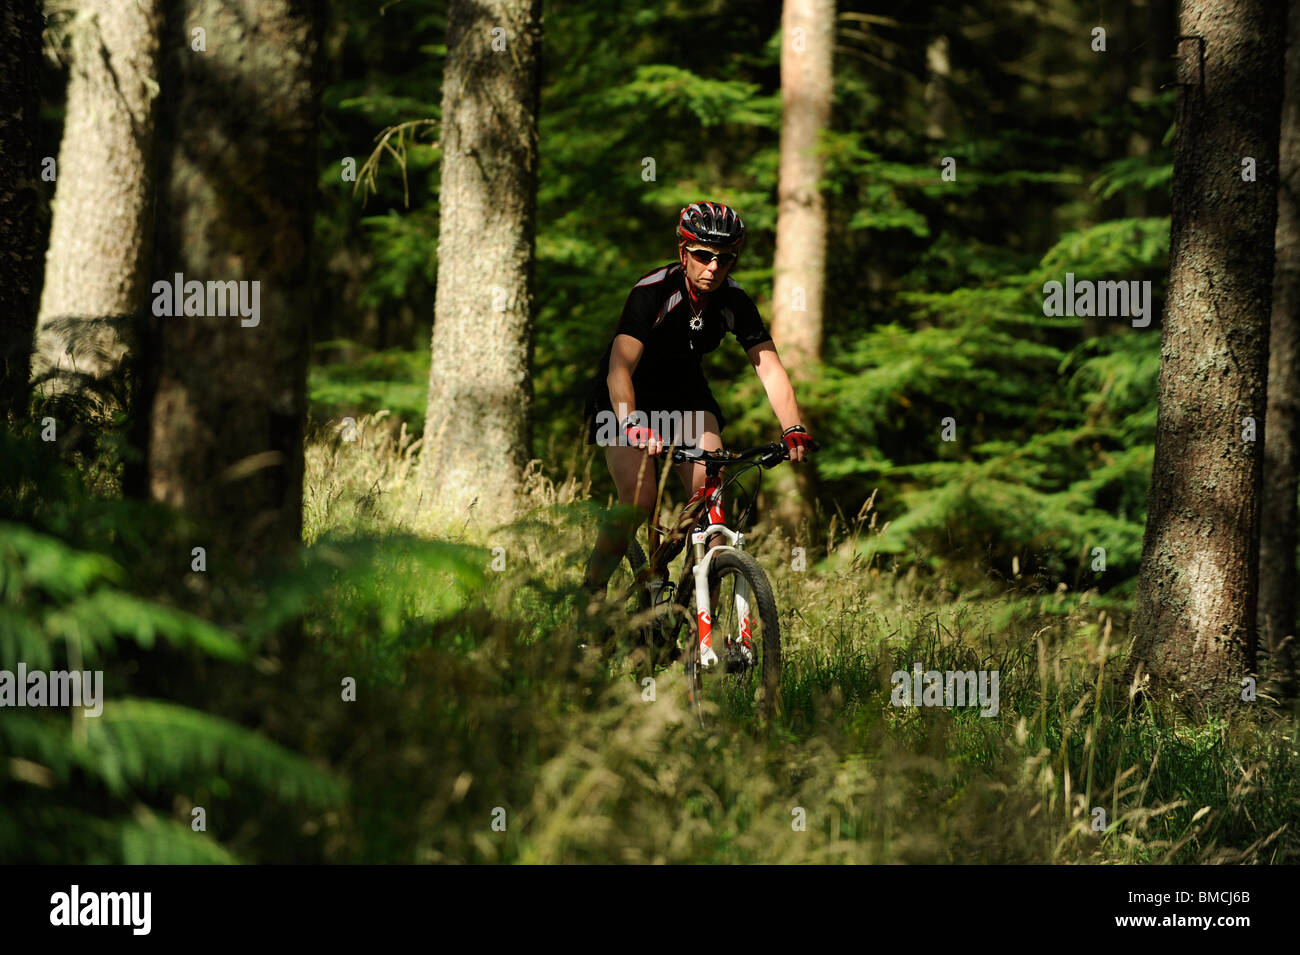 whinlatter forest mountain biking